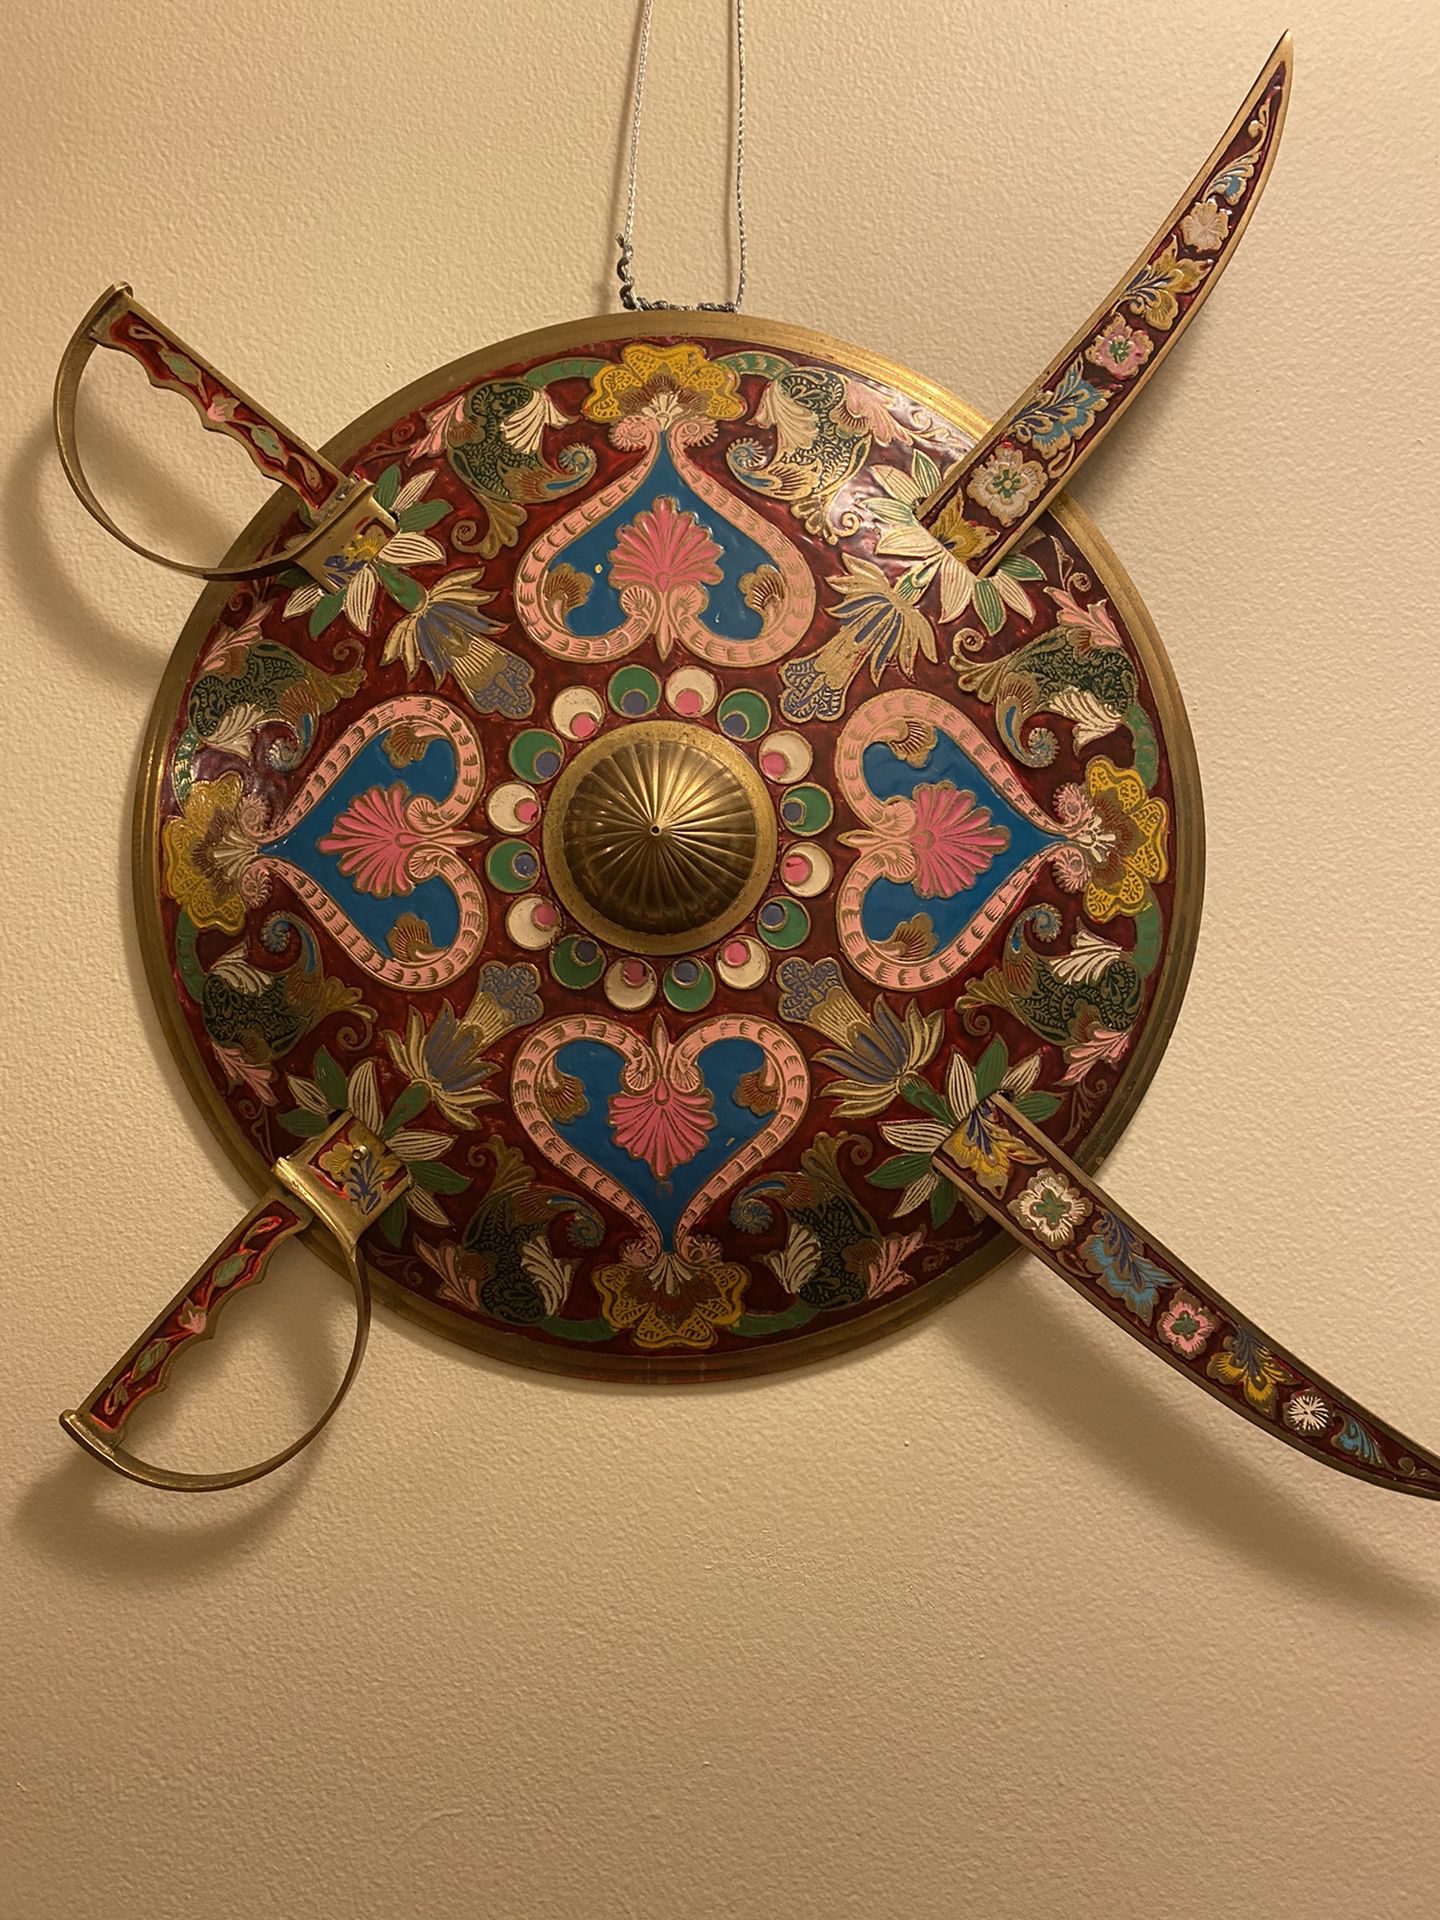 Unique shield and swords decoration